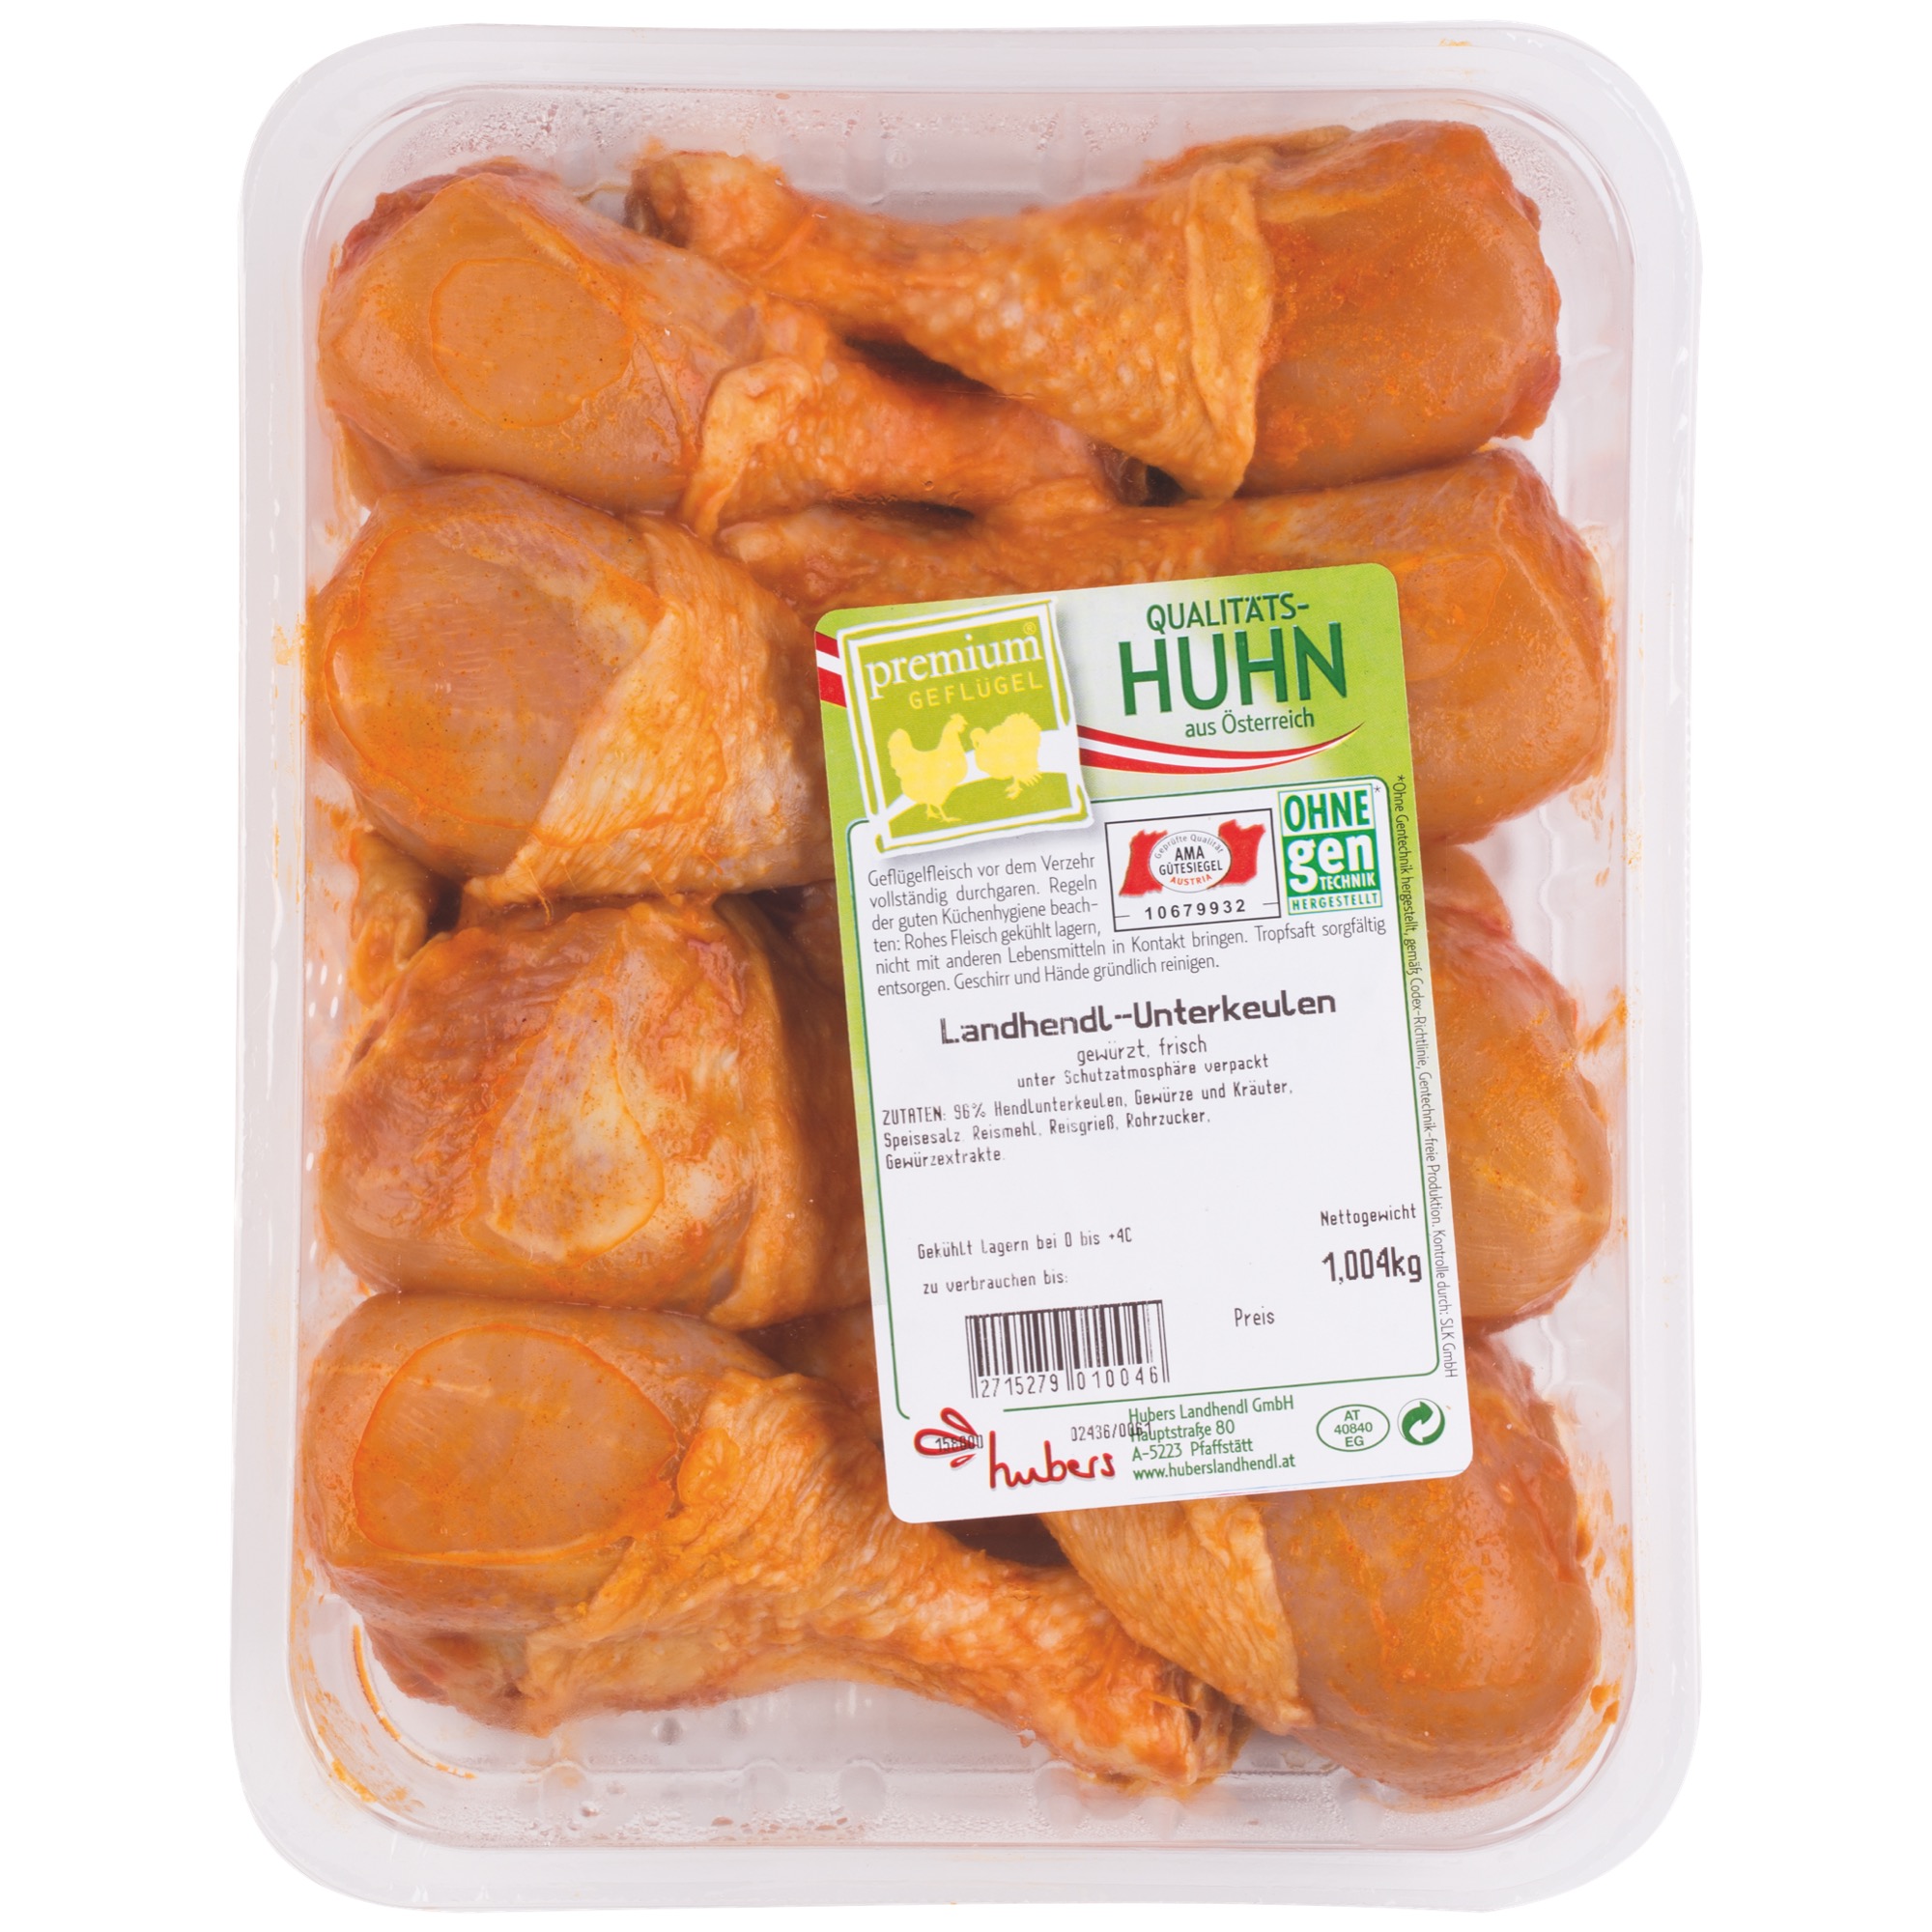 Quality Hühner Unterkeulen gewü. ca.1kg